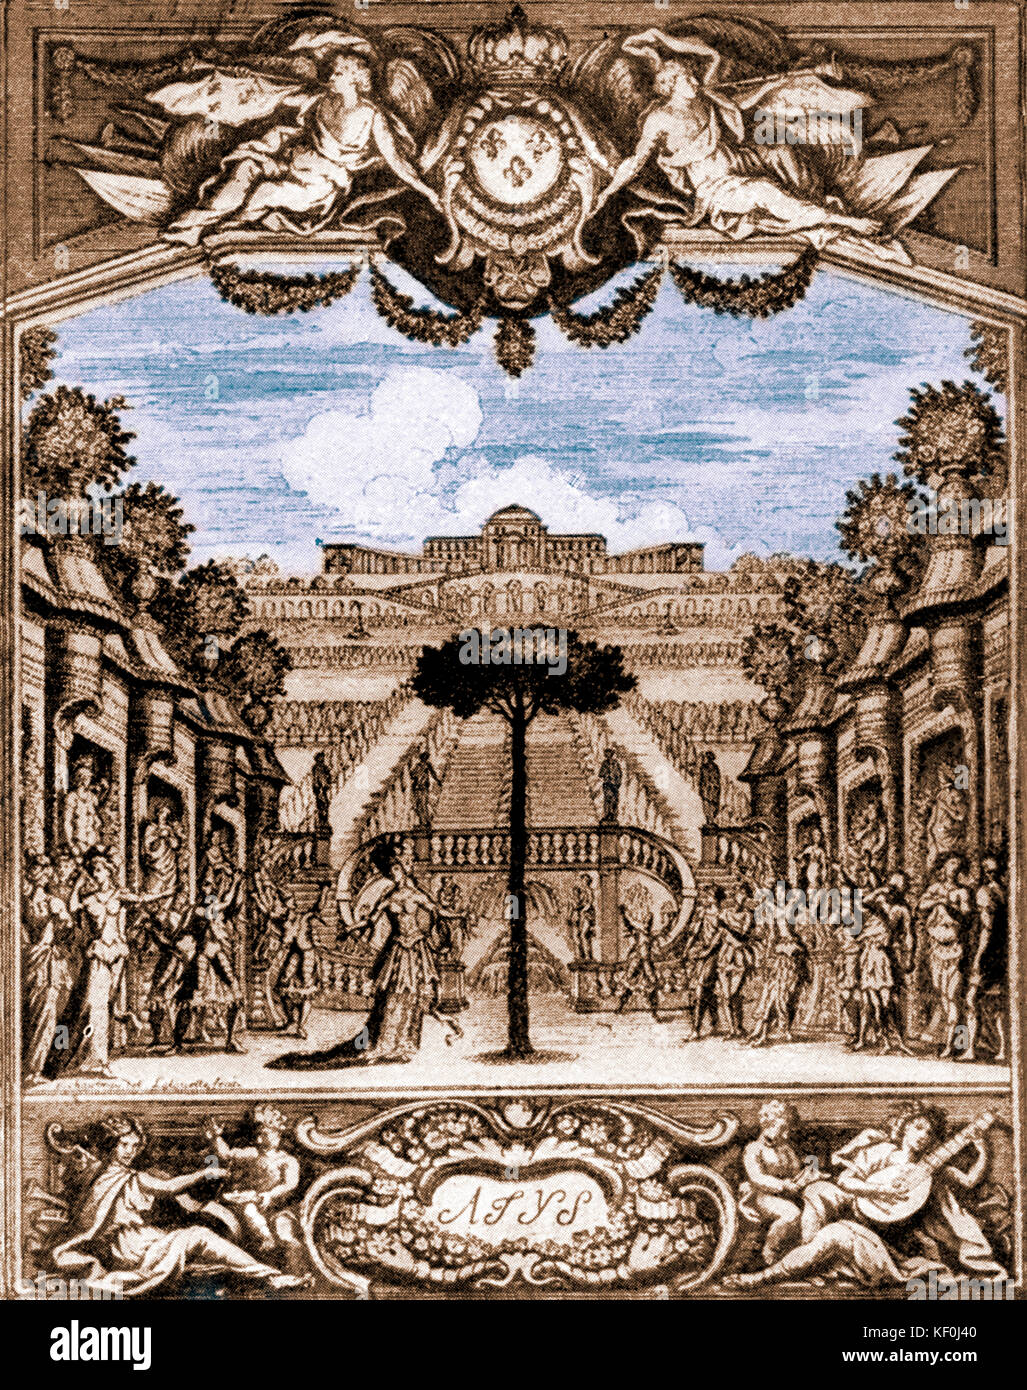 Atys' von Jean-Baptiste Lully. Die Titlepage 1676 Oper. J-BL Französisch Italienisch Komponist 28. November 1632 - vom 22. März 1687. Getönte Ausführung. Stockfoto